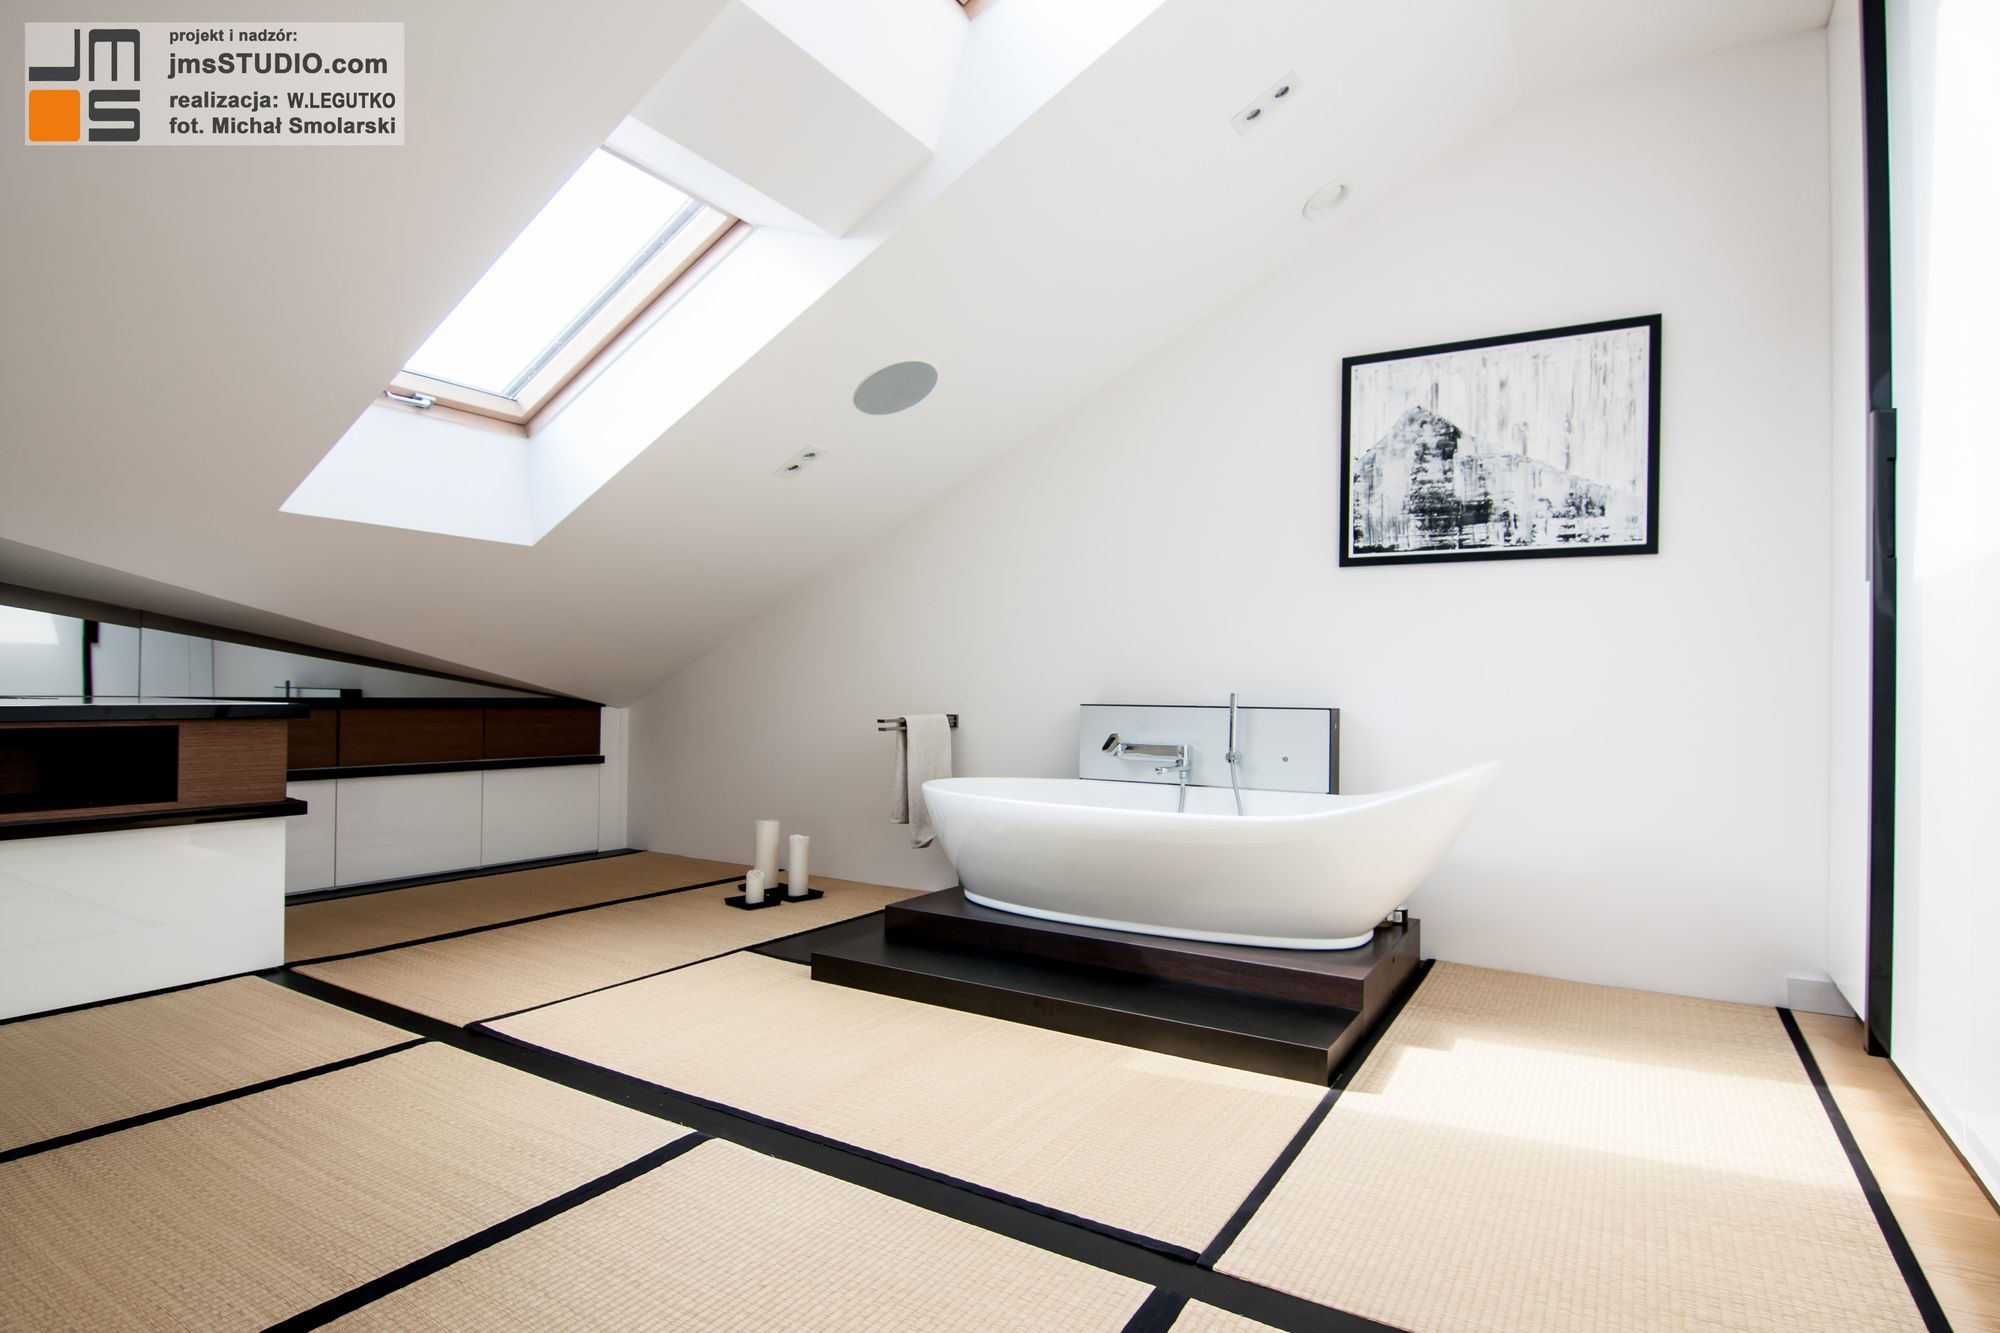 sypialna inspirowana estetyką japońską projekt wnętrza na poddaszu sypalnia z wanną i łużkiem chowanym